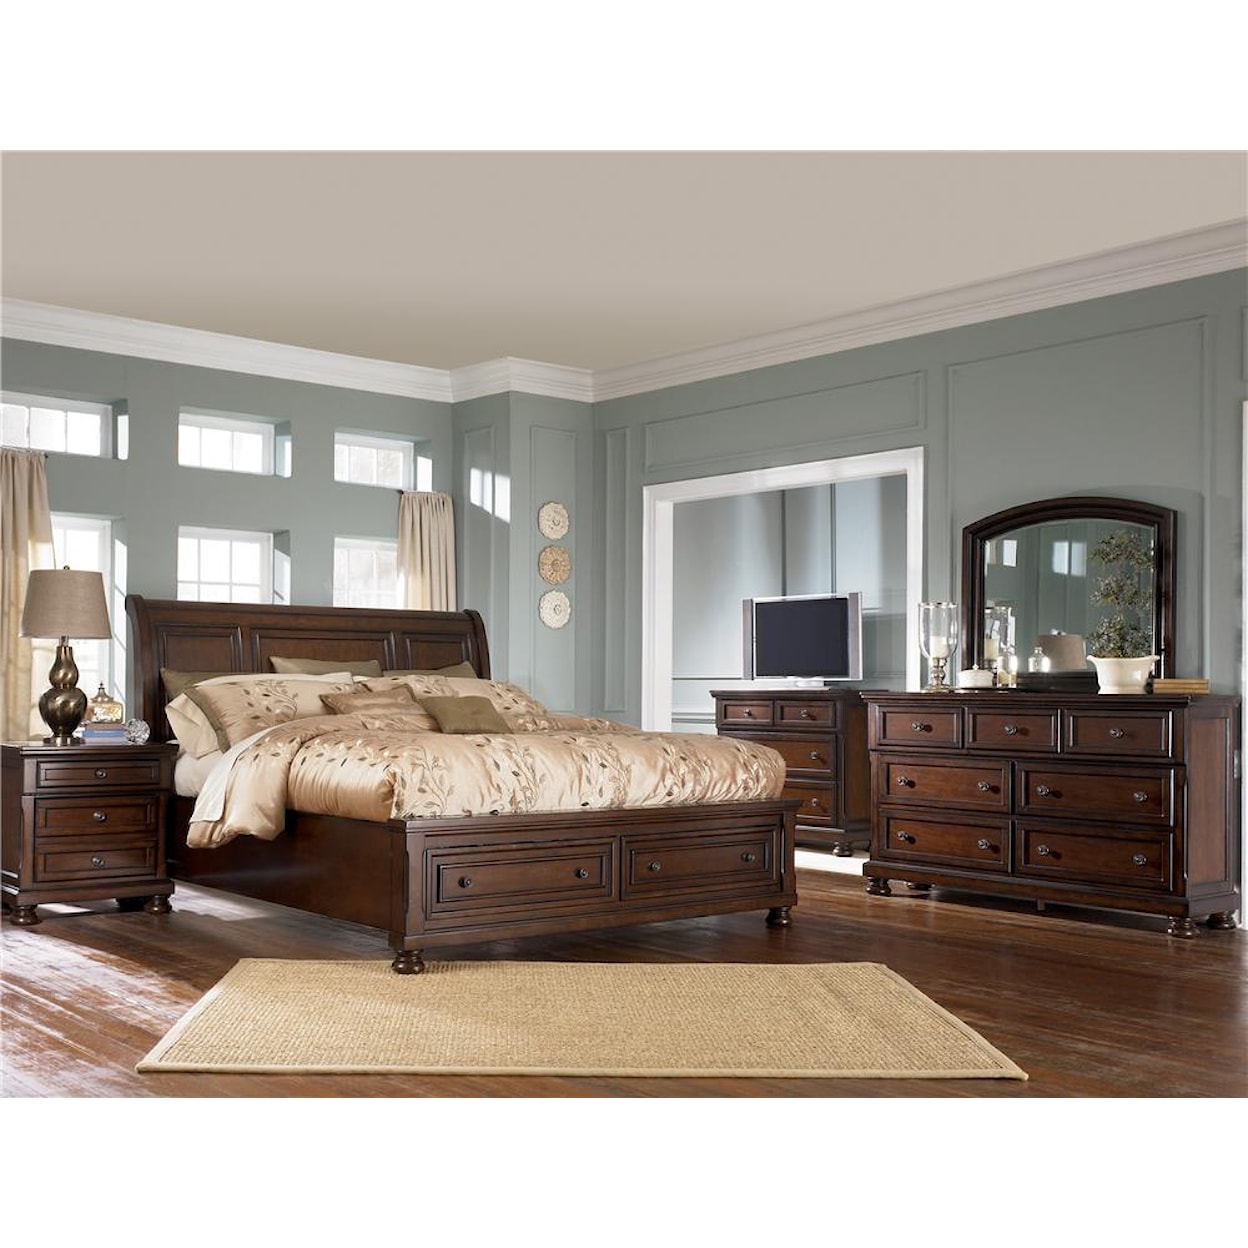 Ashley Furniture Porter bedroom set